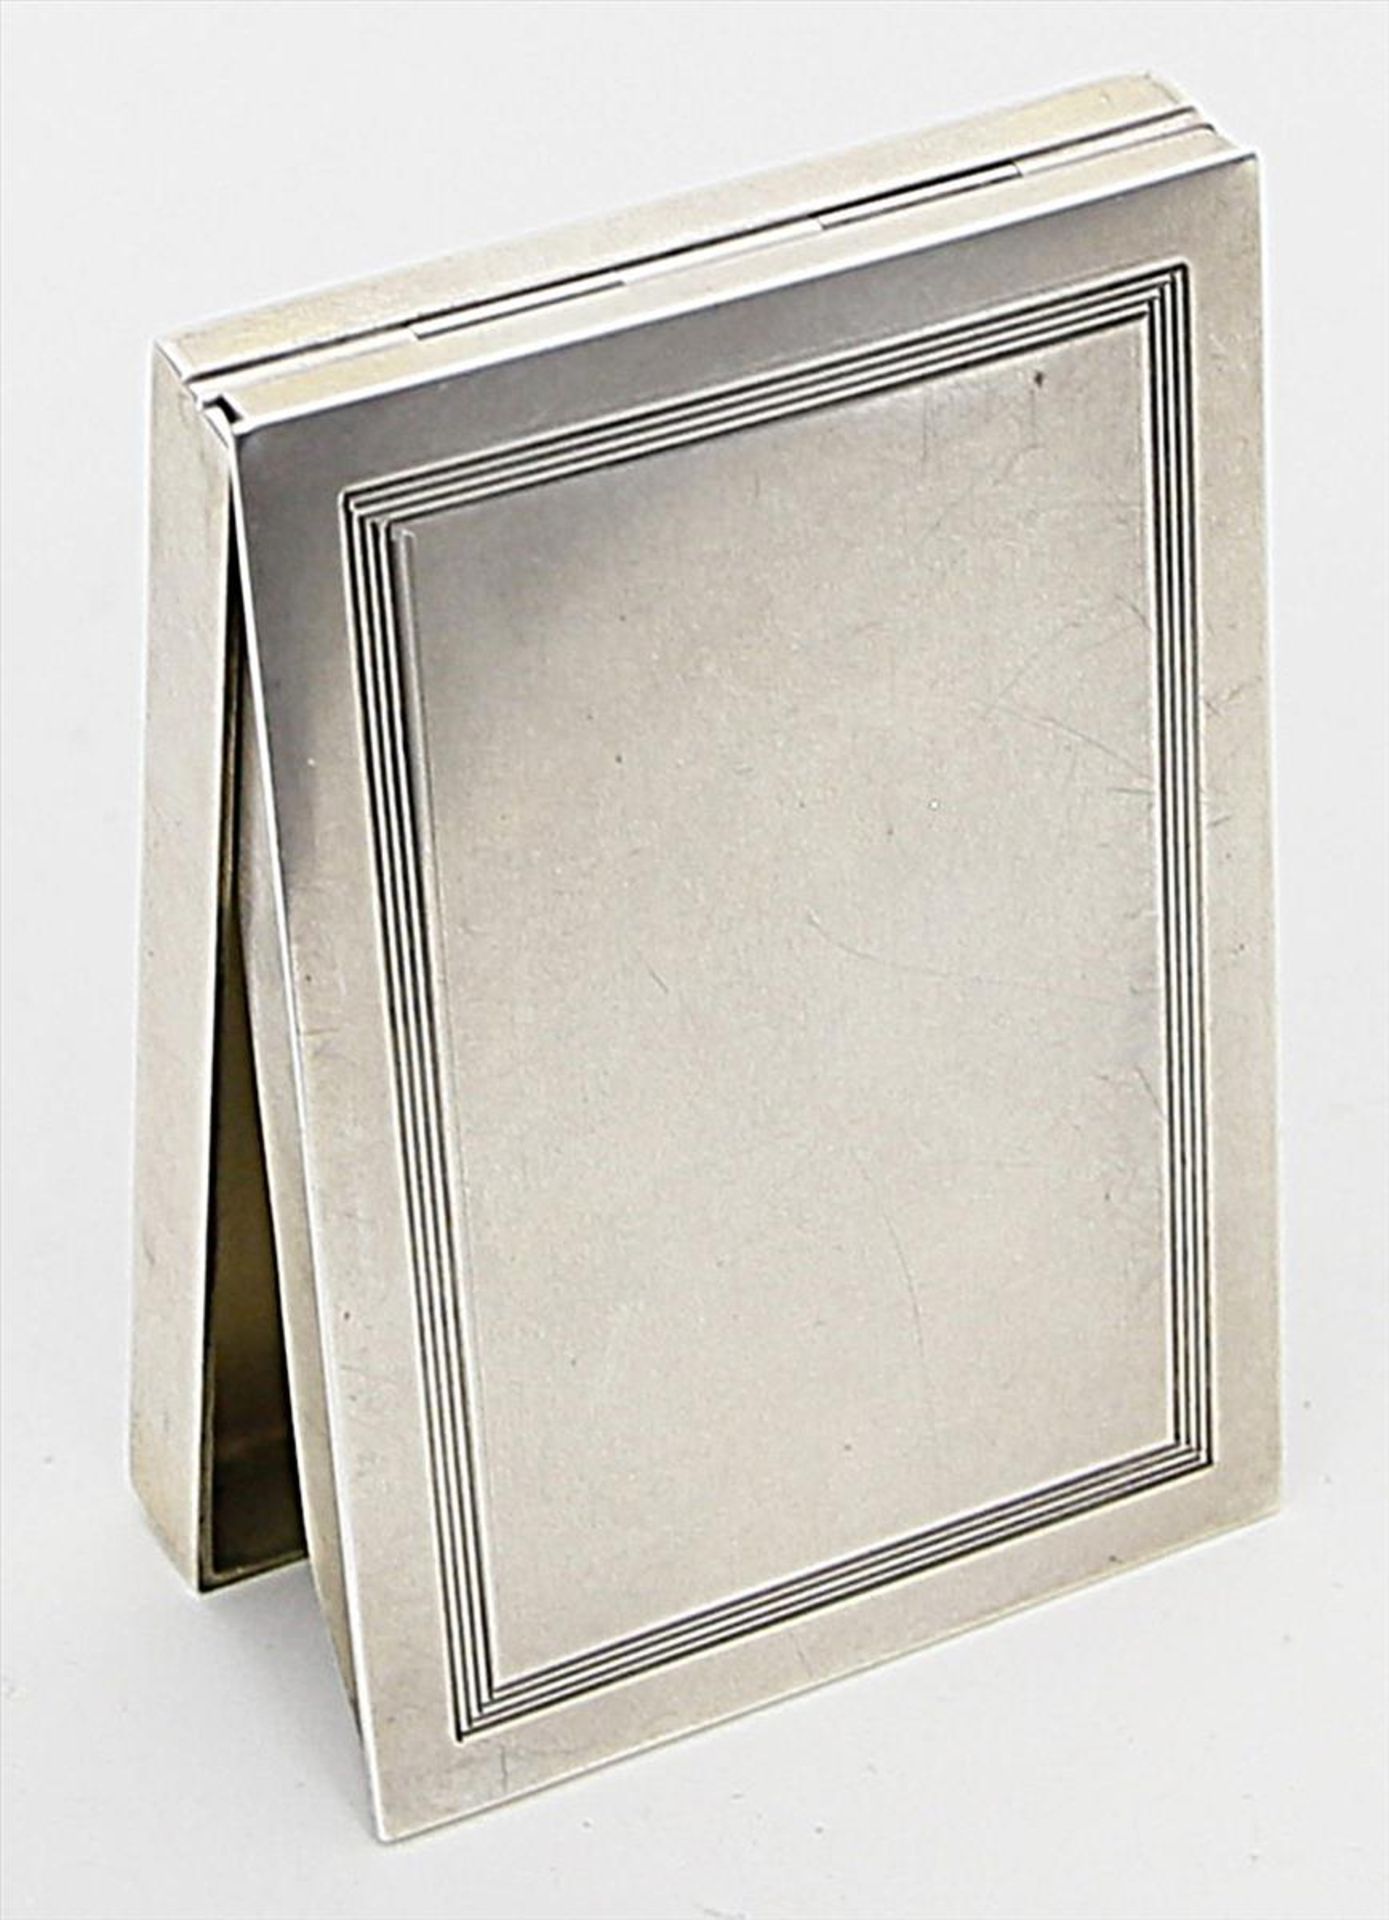 Kaiserliches Etui.800/000 Silber, brutto 141 g, Innenvergoldung. Rechteckform mit umlaufendem - Bild 5 aus 5